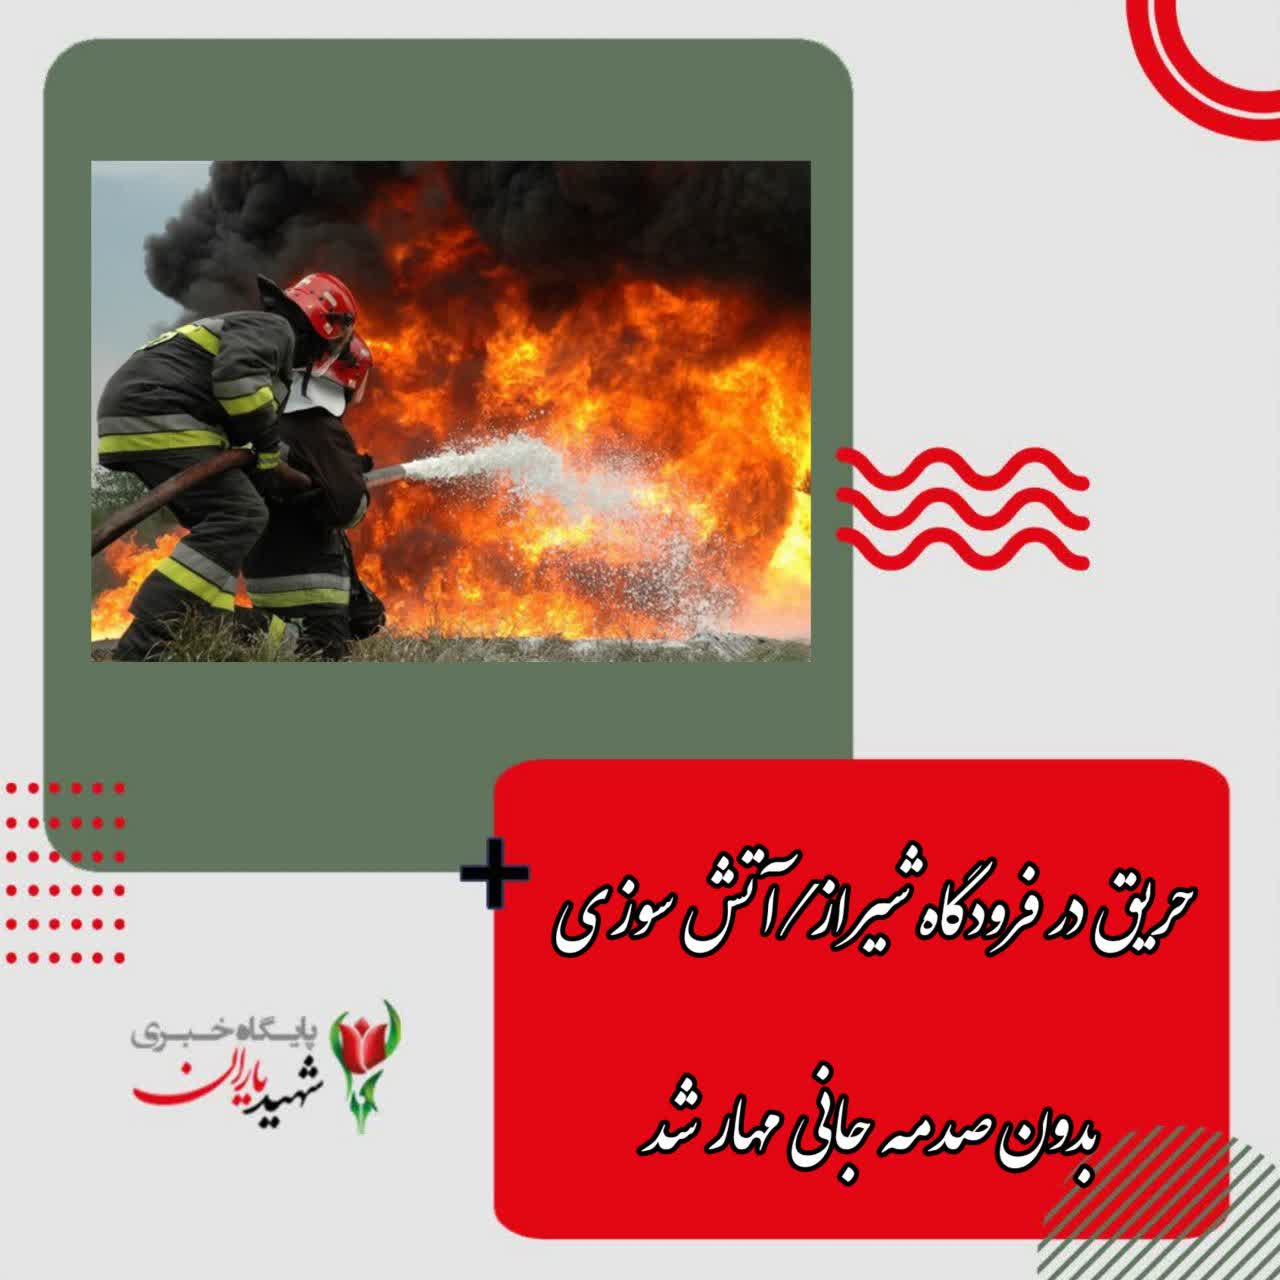 سرپرست سازمان آتش نشانی شیراز خبر داد: